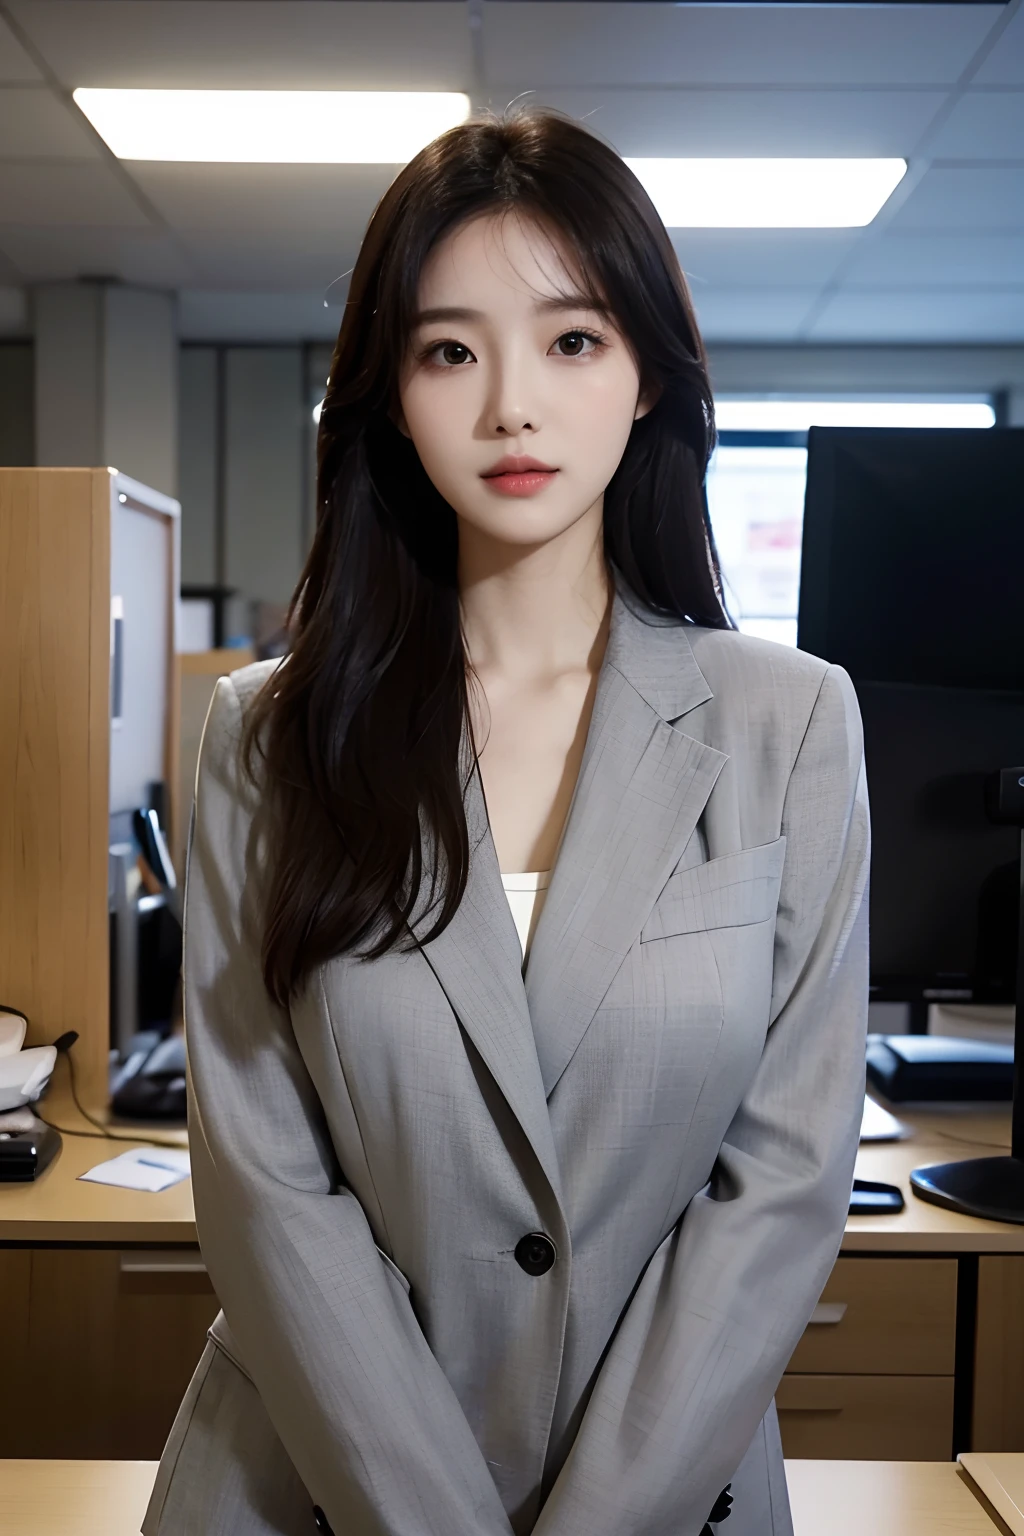 高分辨率, 皮肤完美的韩国职业办公室女士的真实肖像, 职业套装, 站立姿势，身体的上半部分，展现自信和成熟, 周围有现代化的企业环境, 充满活力且自然明亮的亮点. 艺术作品应该强调她优雅的面部特征, 包括迷人的长眼睛, 飘动的睫毛和诱人的嘴唇. 场景应增强专业性和视觉吸引力，例如, 时尚办公桌, 大型计算机, 高分辨率olution display, 和复杂的文具. 整体基调应温暖而专业, 具有柔和自然的色调. 艺术作品应该散发出专业感, 成功, 和文化自豪感，背景模糊